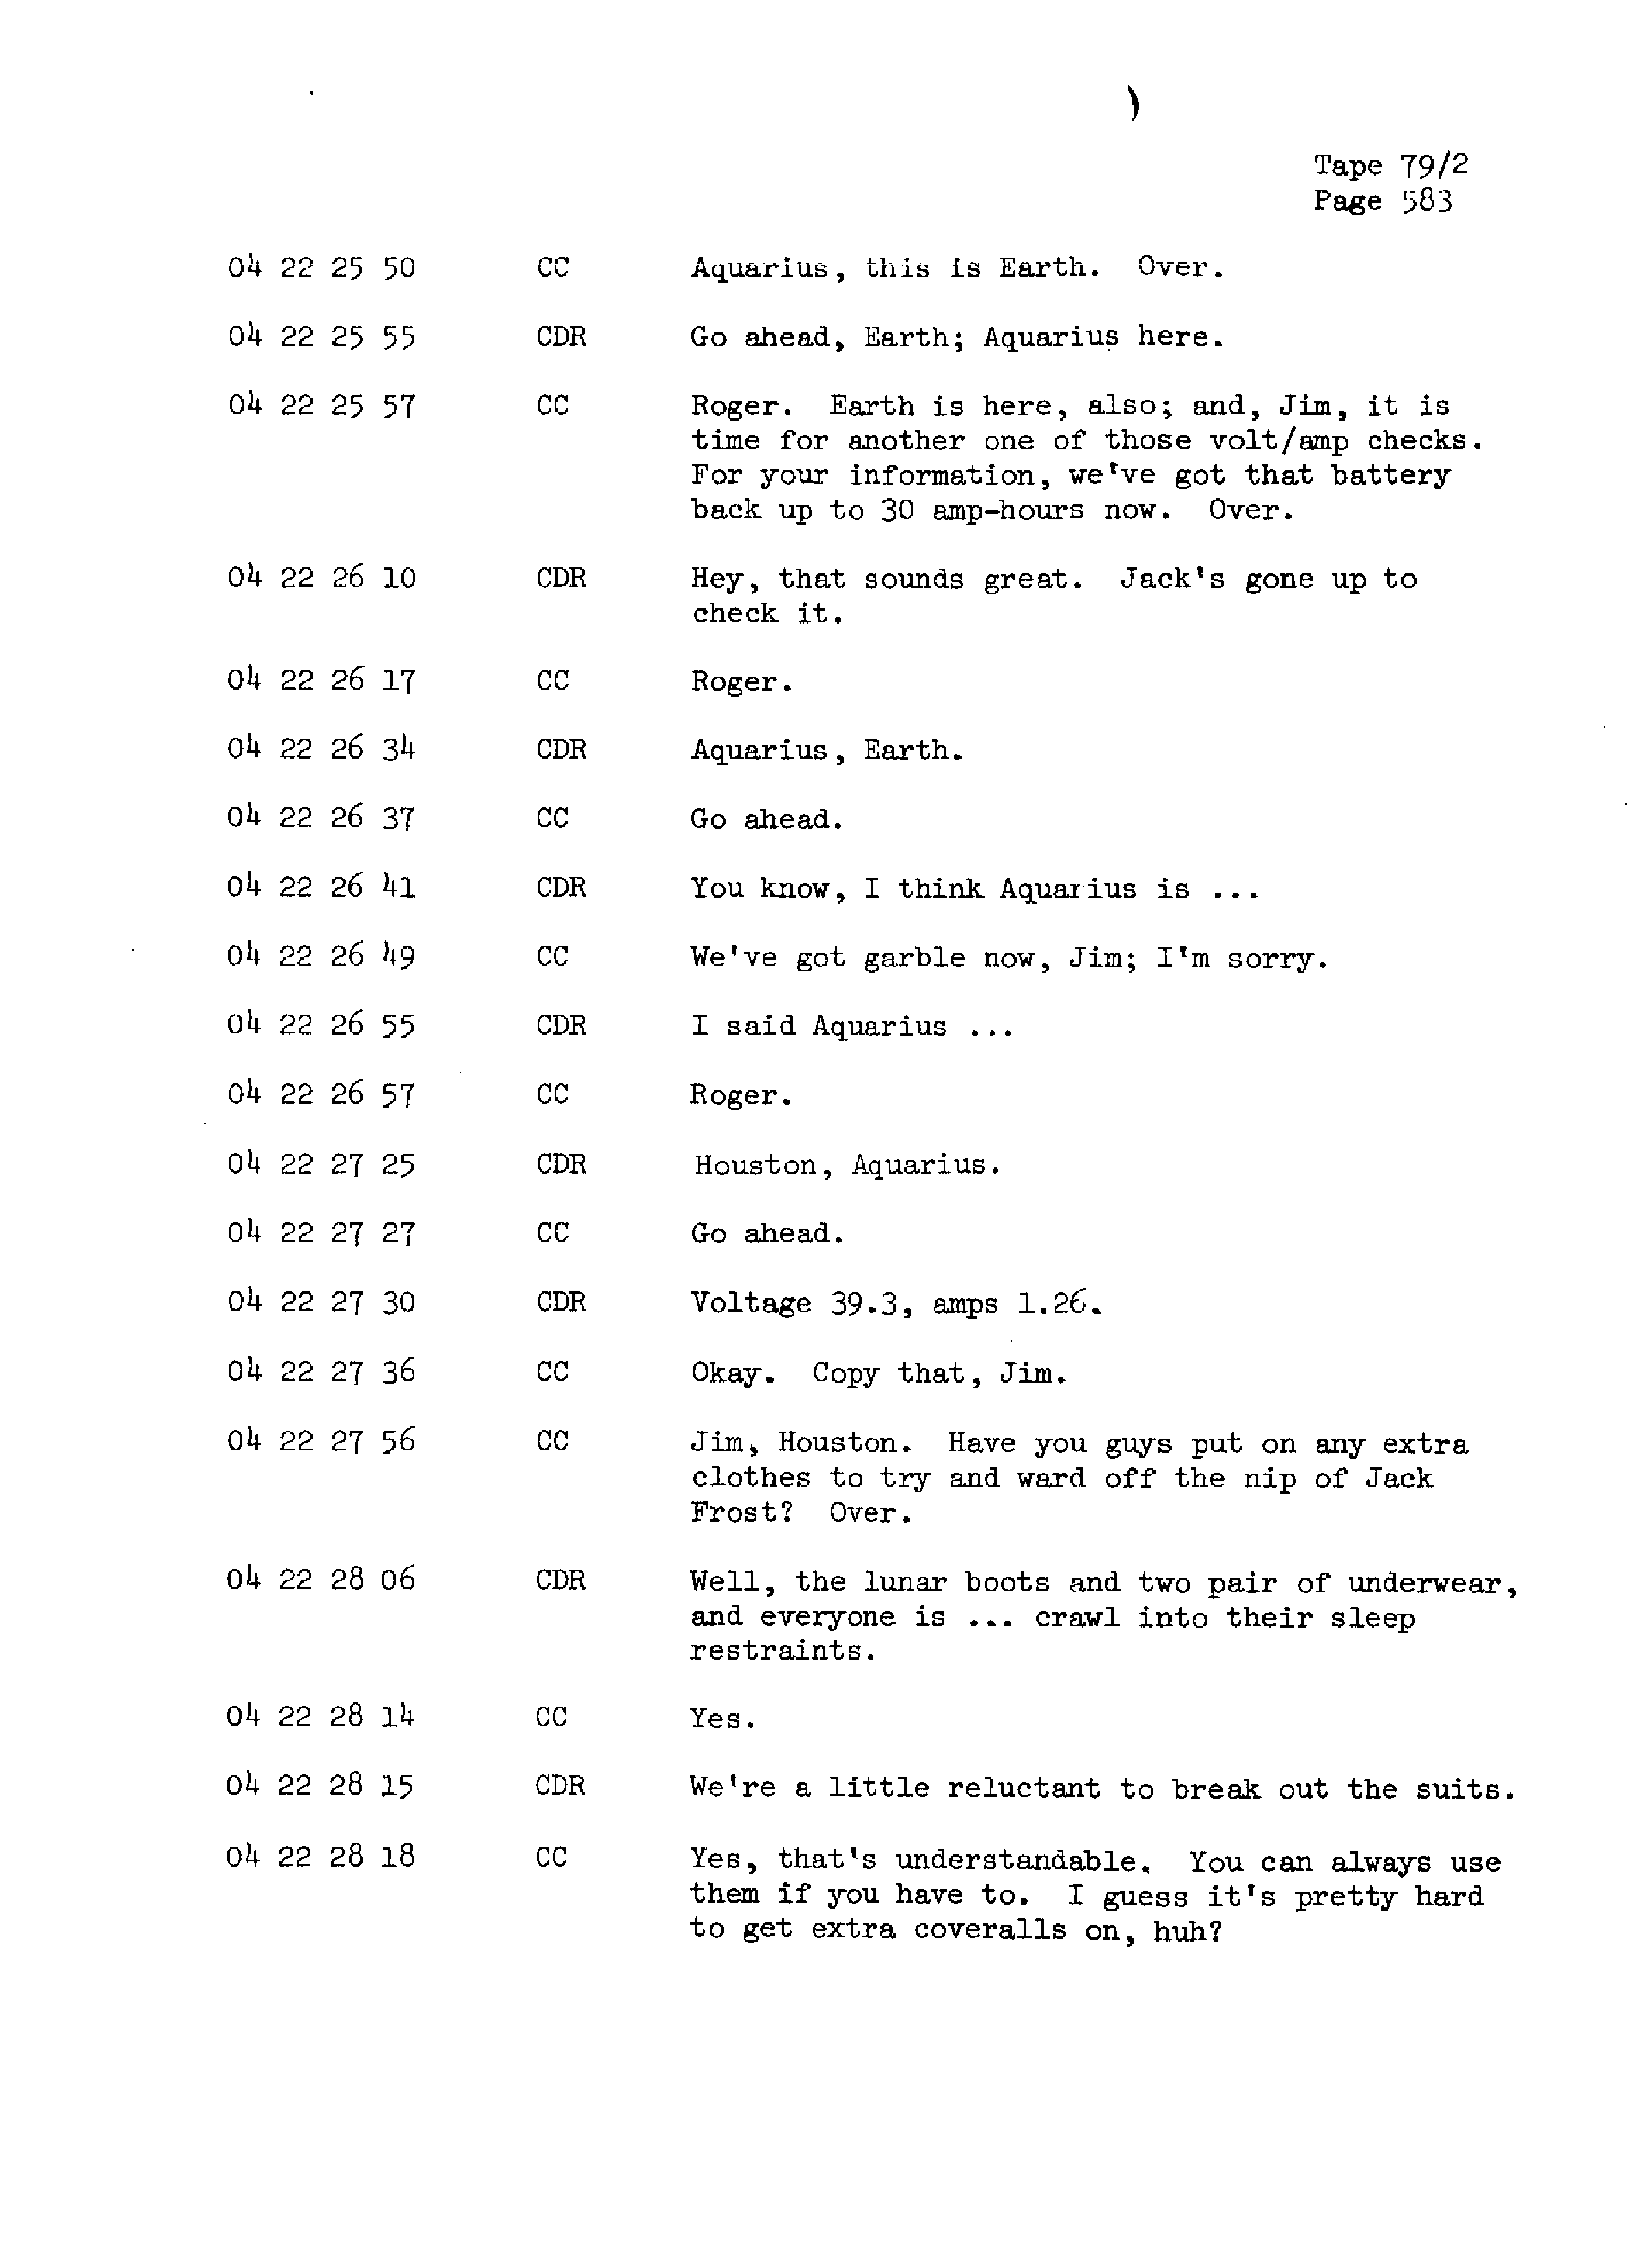 Page 590 of Apollo 13’s original transcript